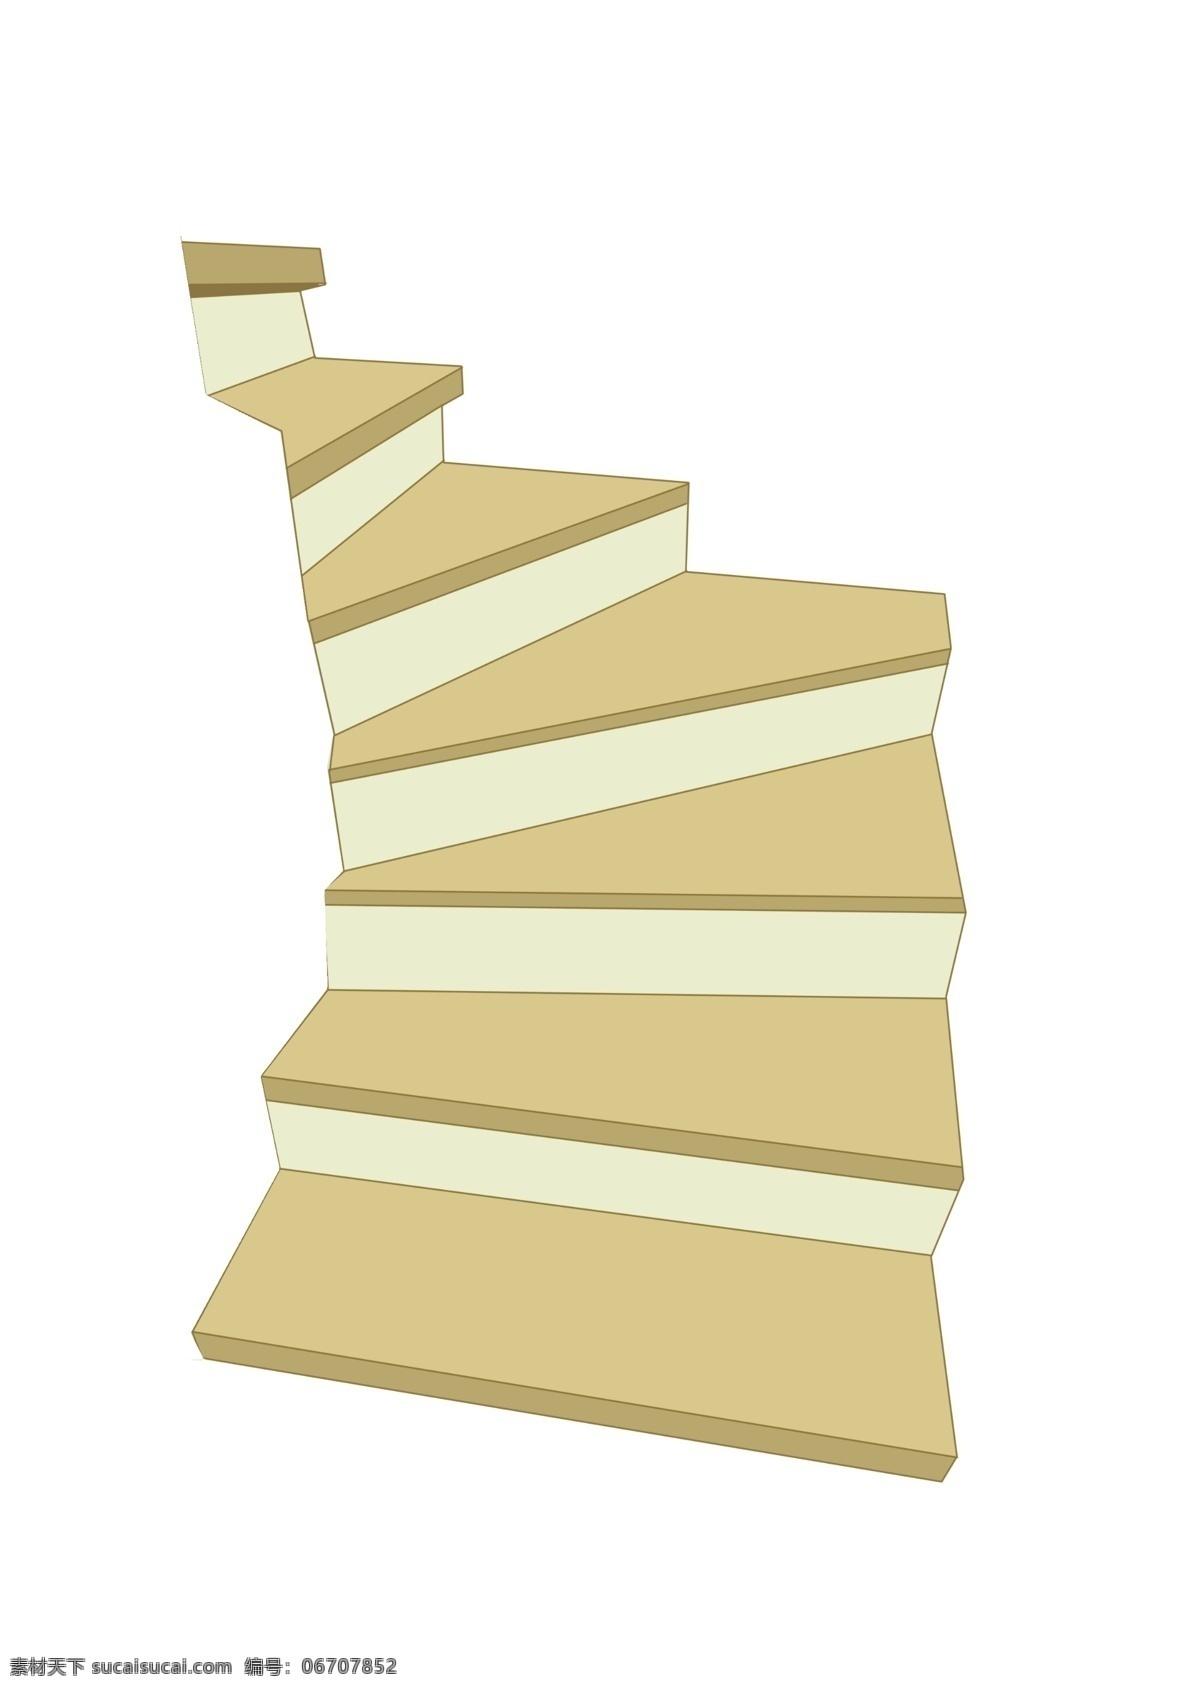 浅黄色 楼梯 插画 浅黄色的楼梯 卡通插画 楼梯插画 楼房楼梯 木质楼梯 楼梯脚垫 爬升的楼梯